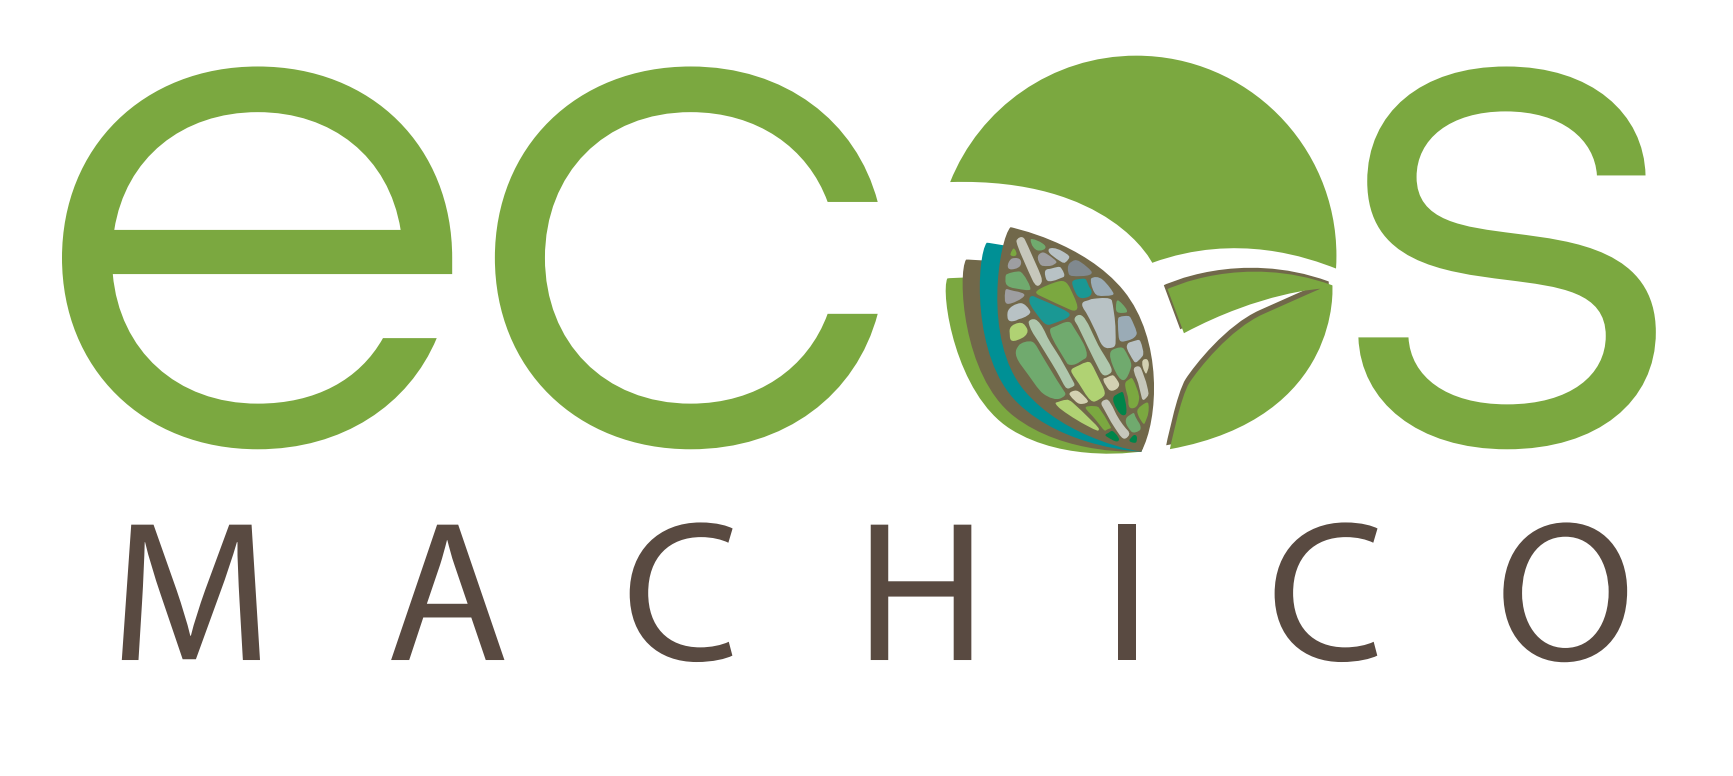 ECOS MACHICO | Desenvolvimento e Sustentabilidade Territorial